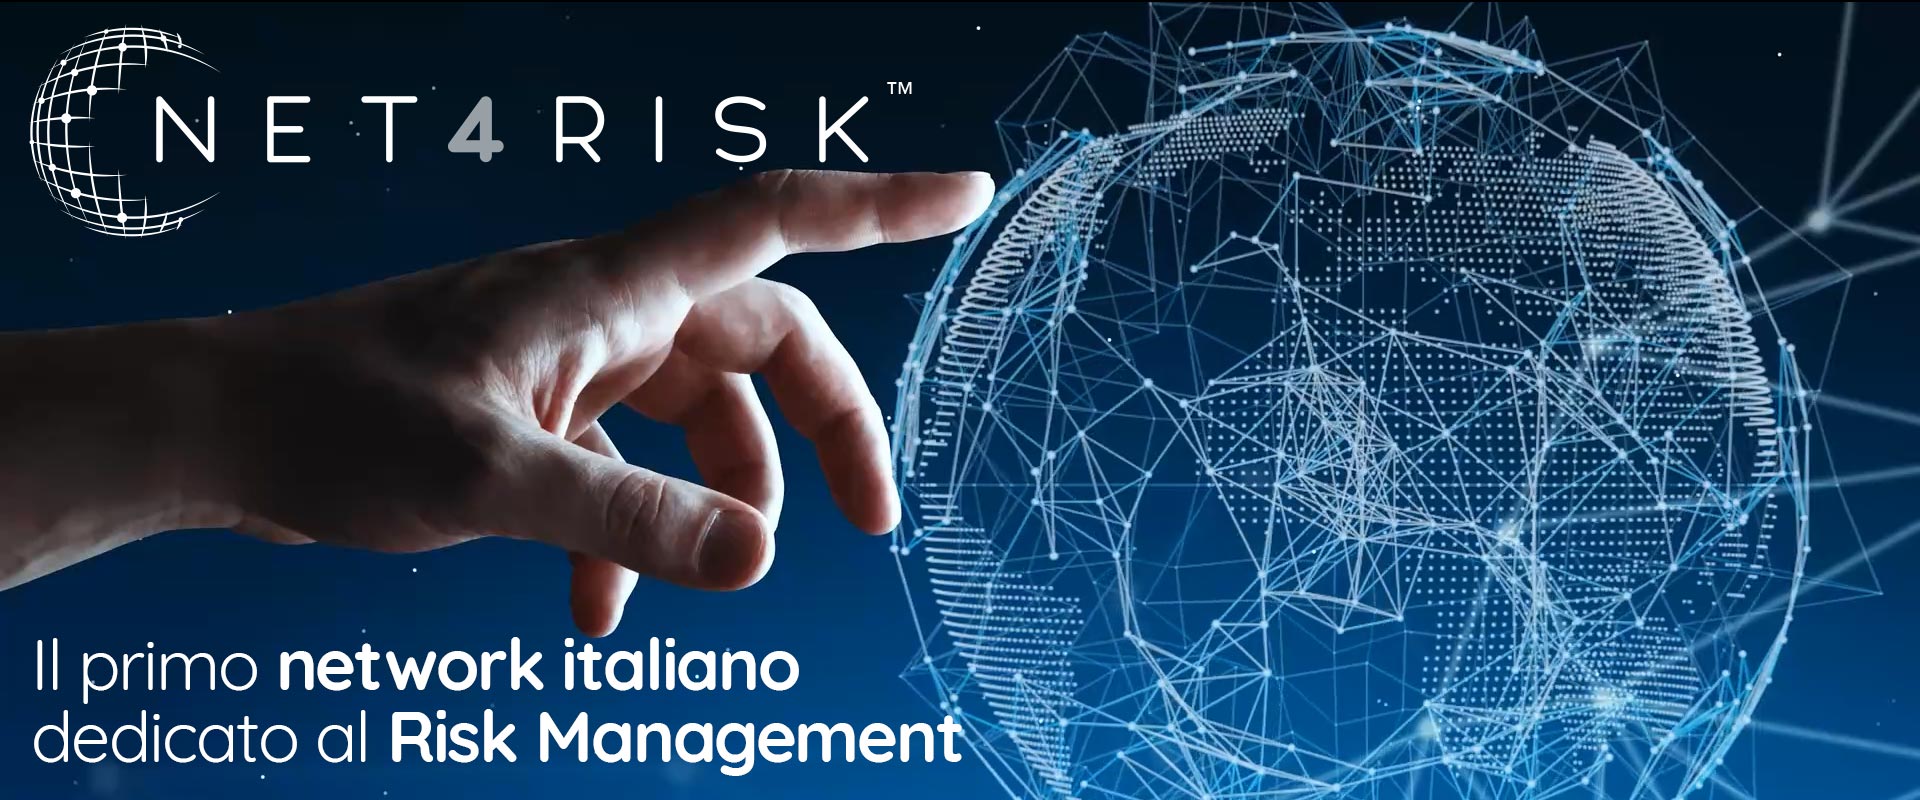 NET4RISK è il primo network italiano di servizi di Risk Management che riunisce broker assicurativi, agenzie e professionisti di tutta Italia